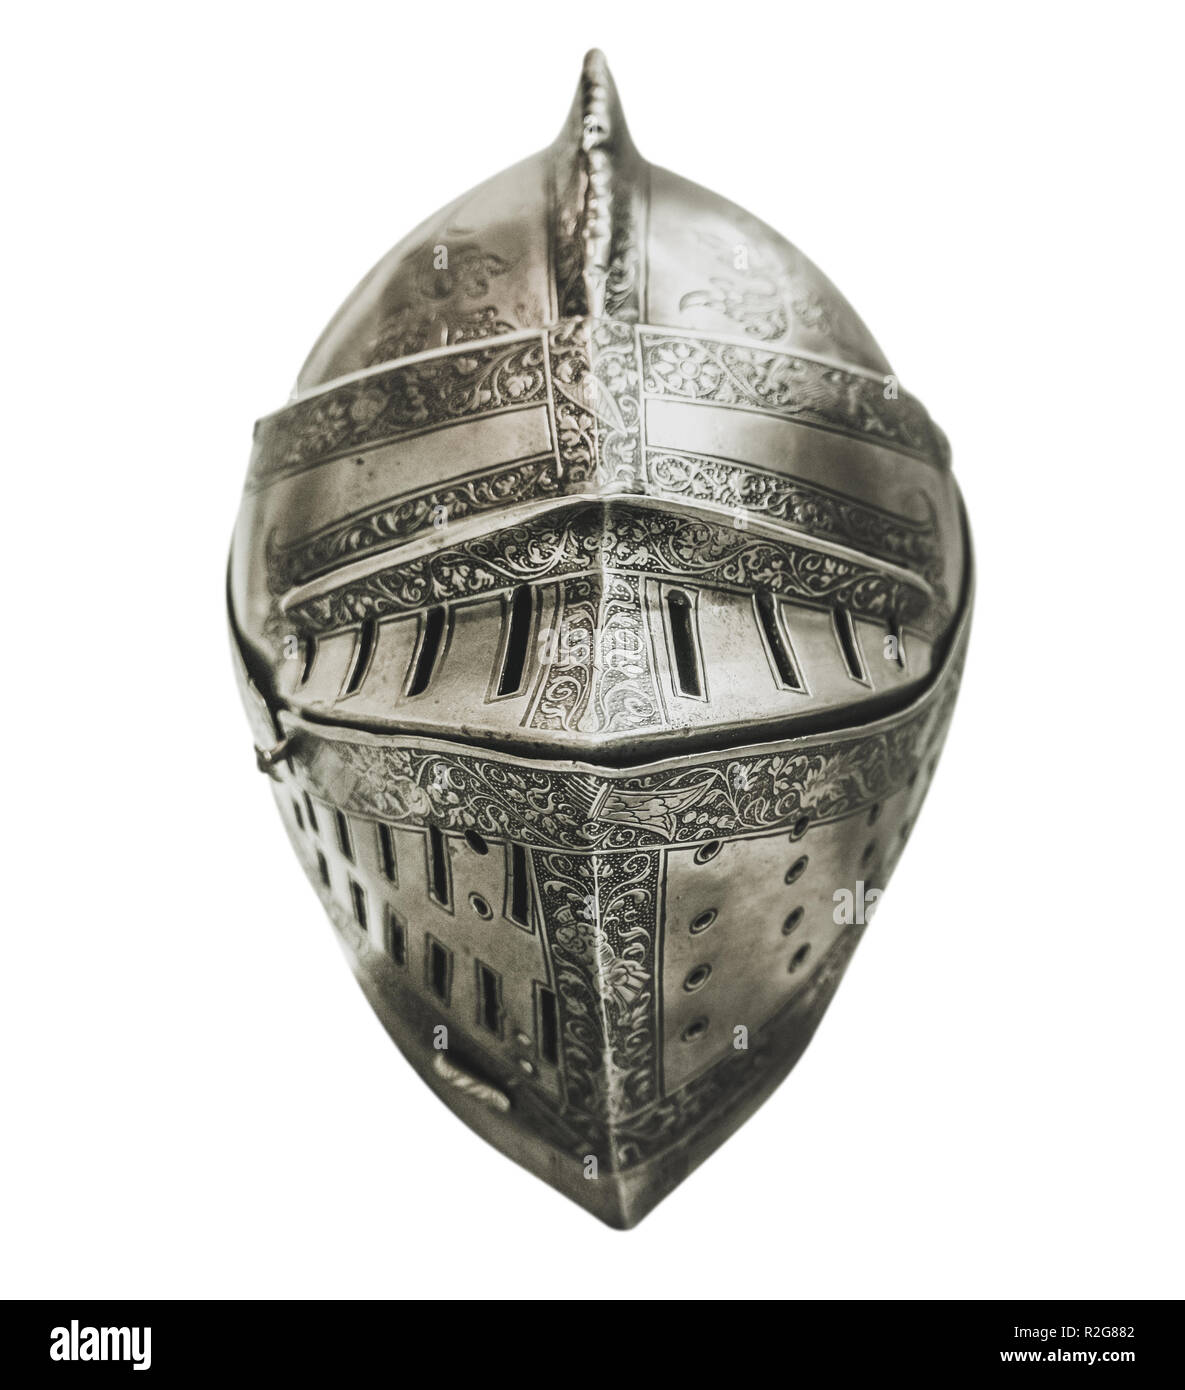 L'armure de chevalier authentique isolés casque avec une faible profondeur de foyer et un fond blanc Banque D'Images